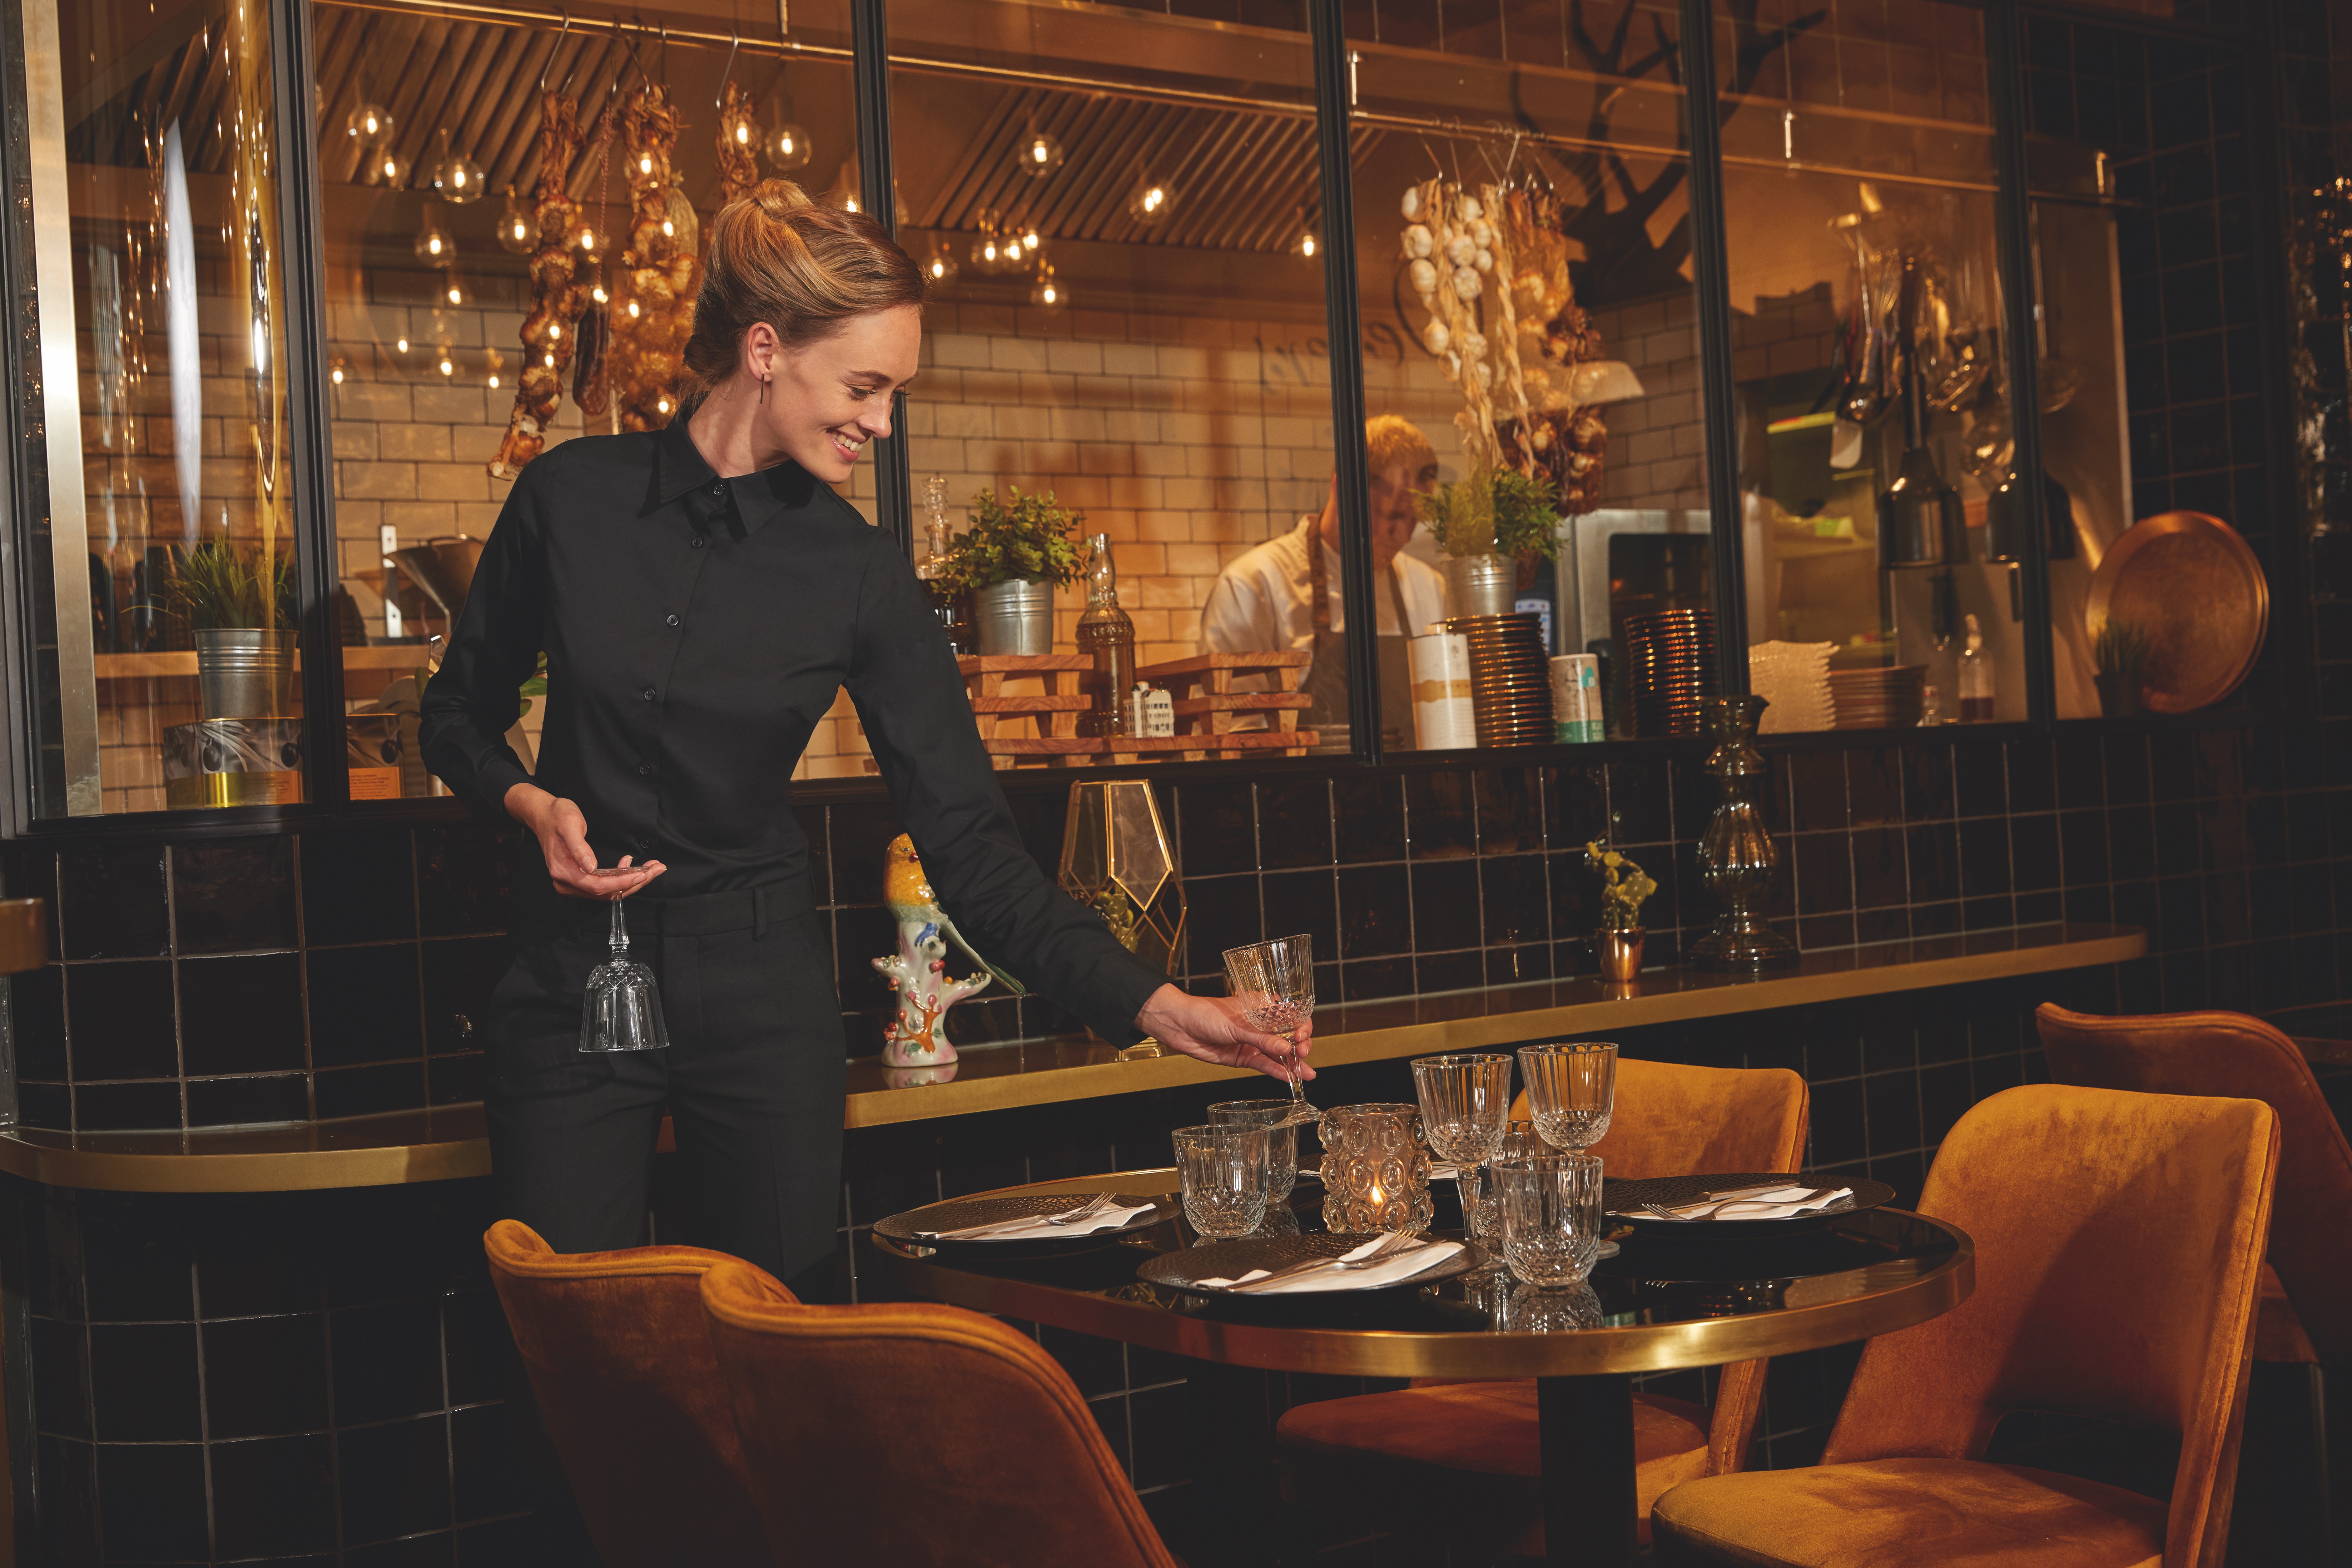 Kellnerin in schwarzem Outfit, stellt Glas auf Tisch